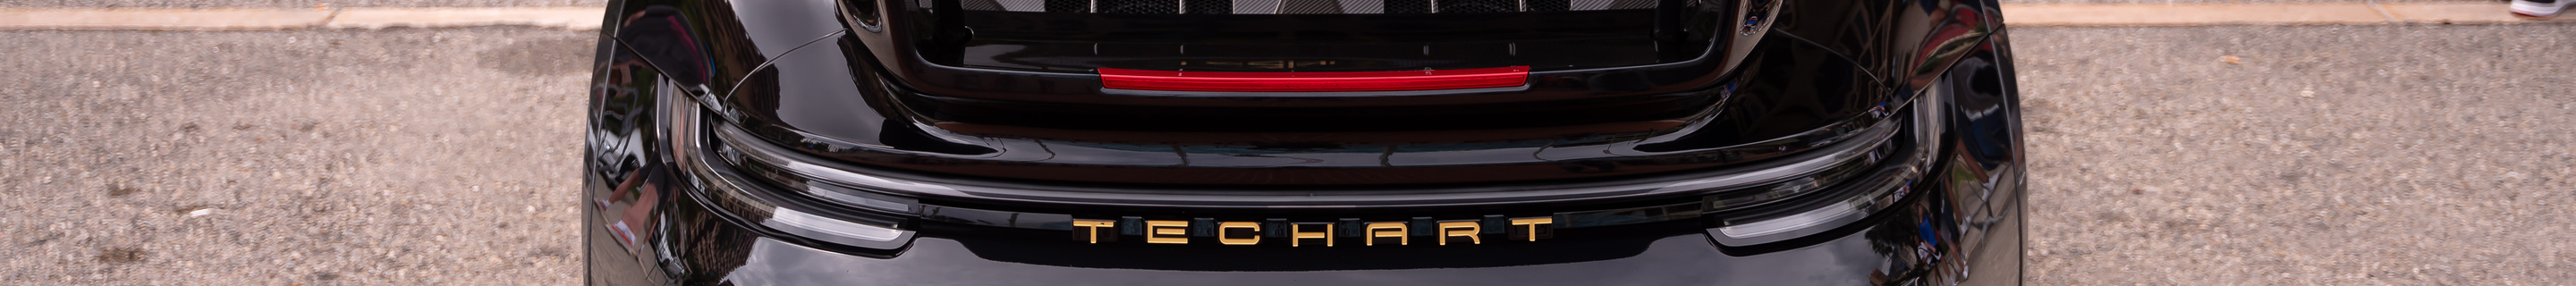 Porsche TechArt 992 GT Street R